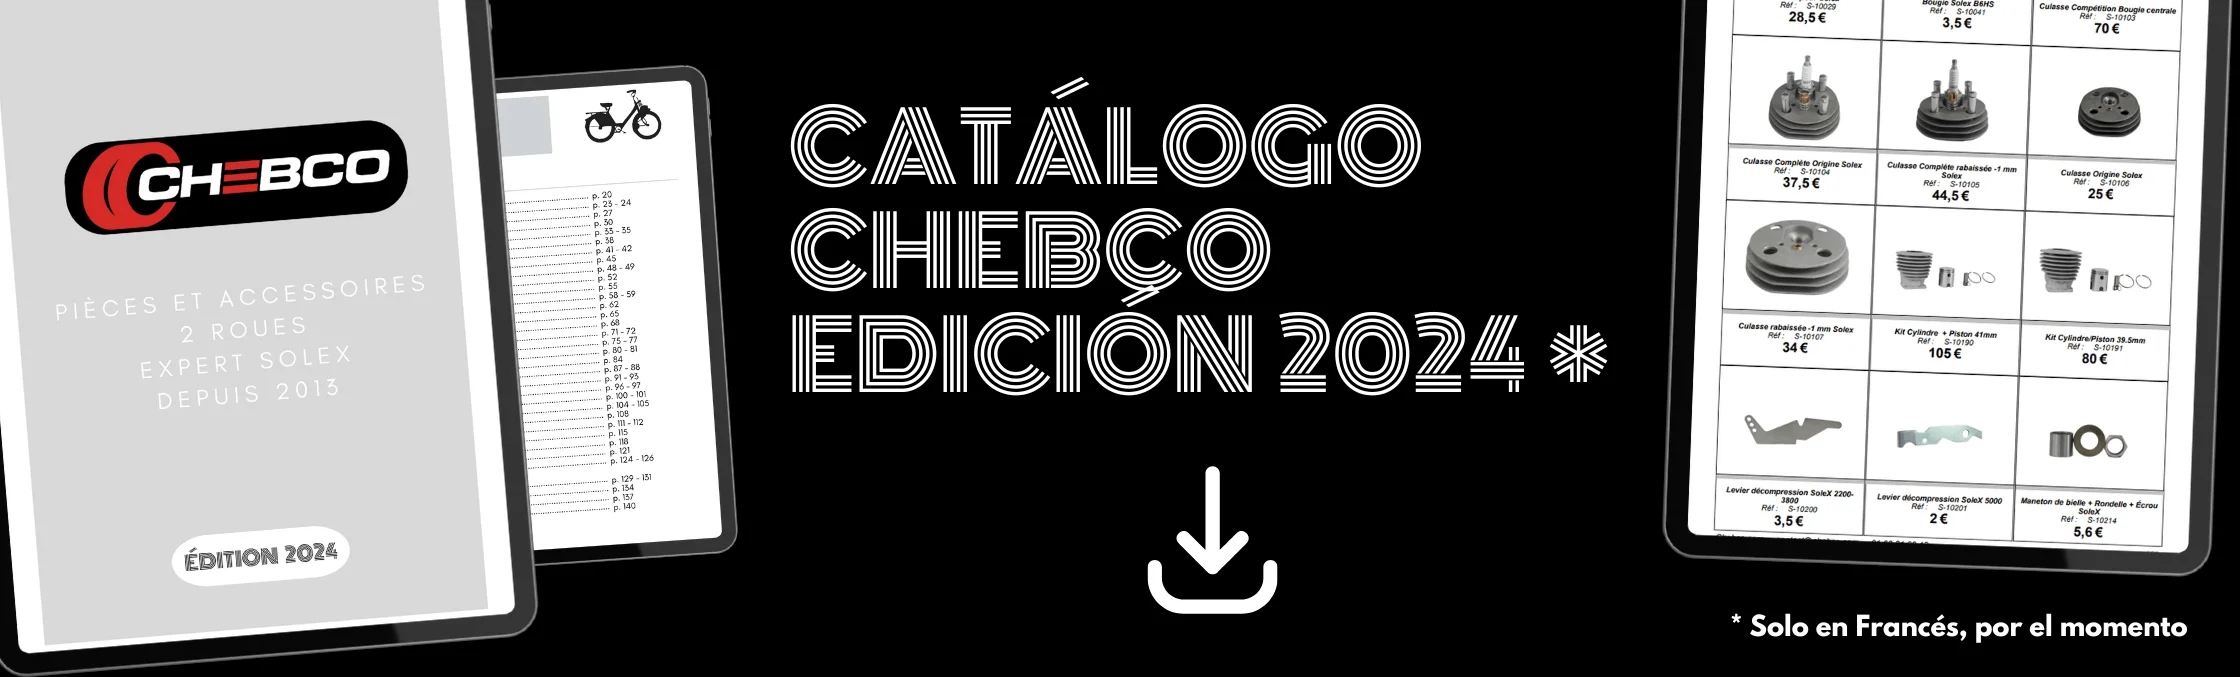 Catalogue Chebco 2024